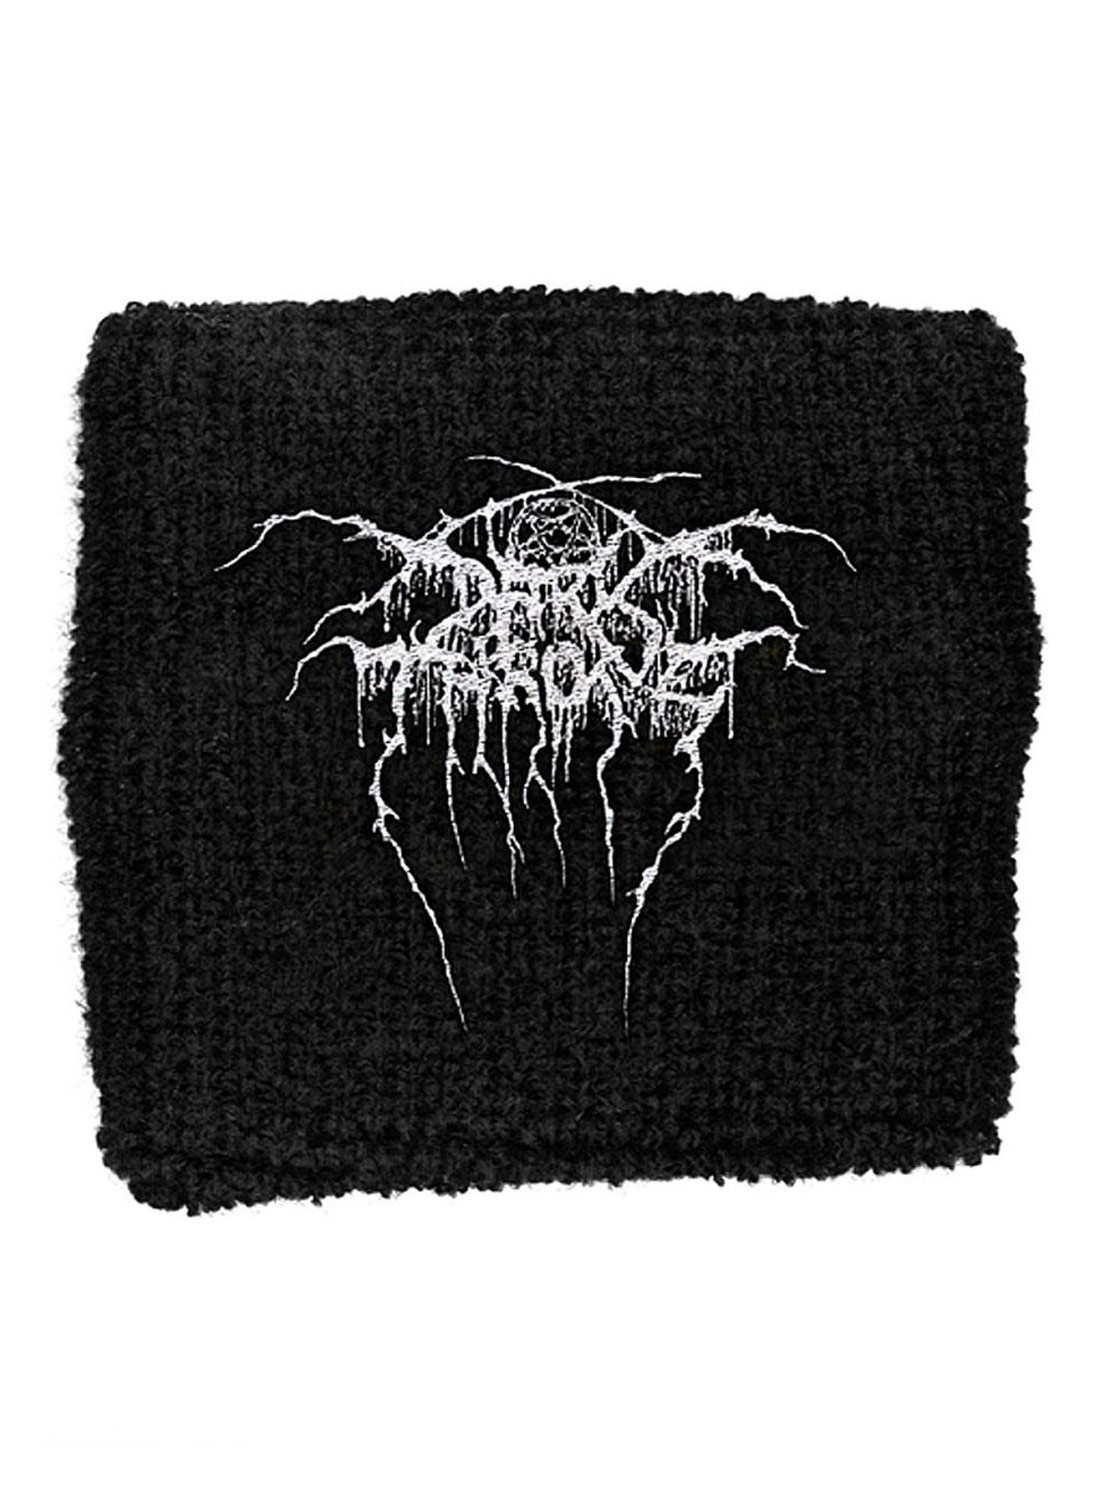 Darkthrone Embroidered Sweatband